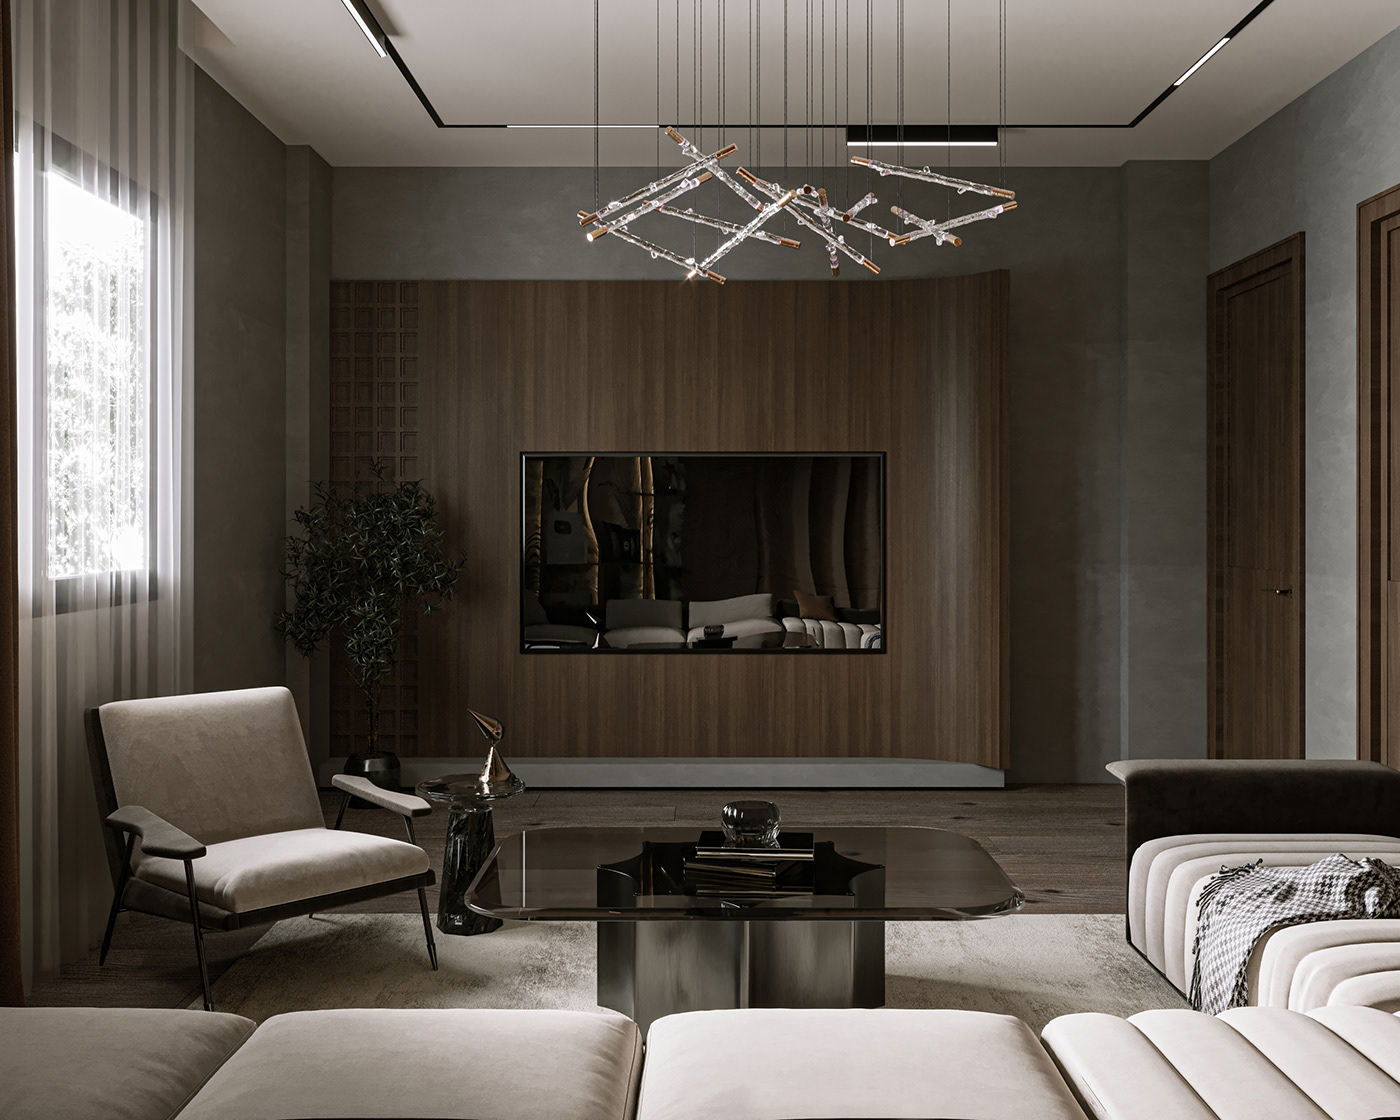 Render 3ds max corona architecture visualization interior design  modern graphic design  ILLUSTRATION  artwork